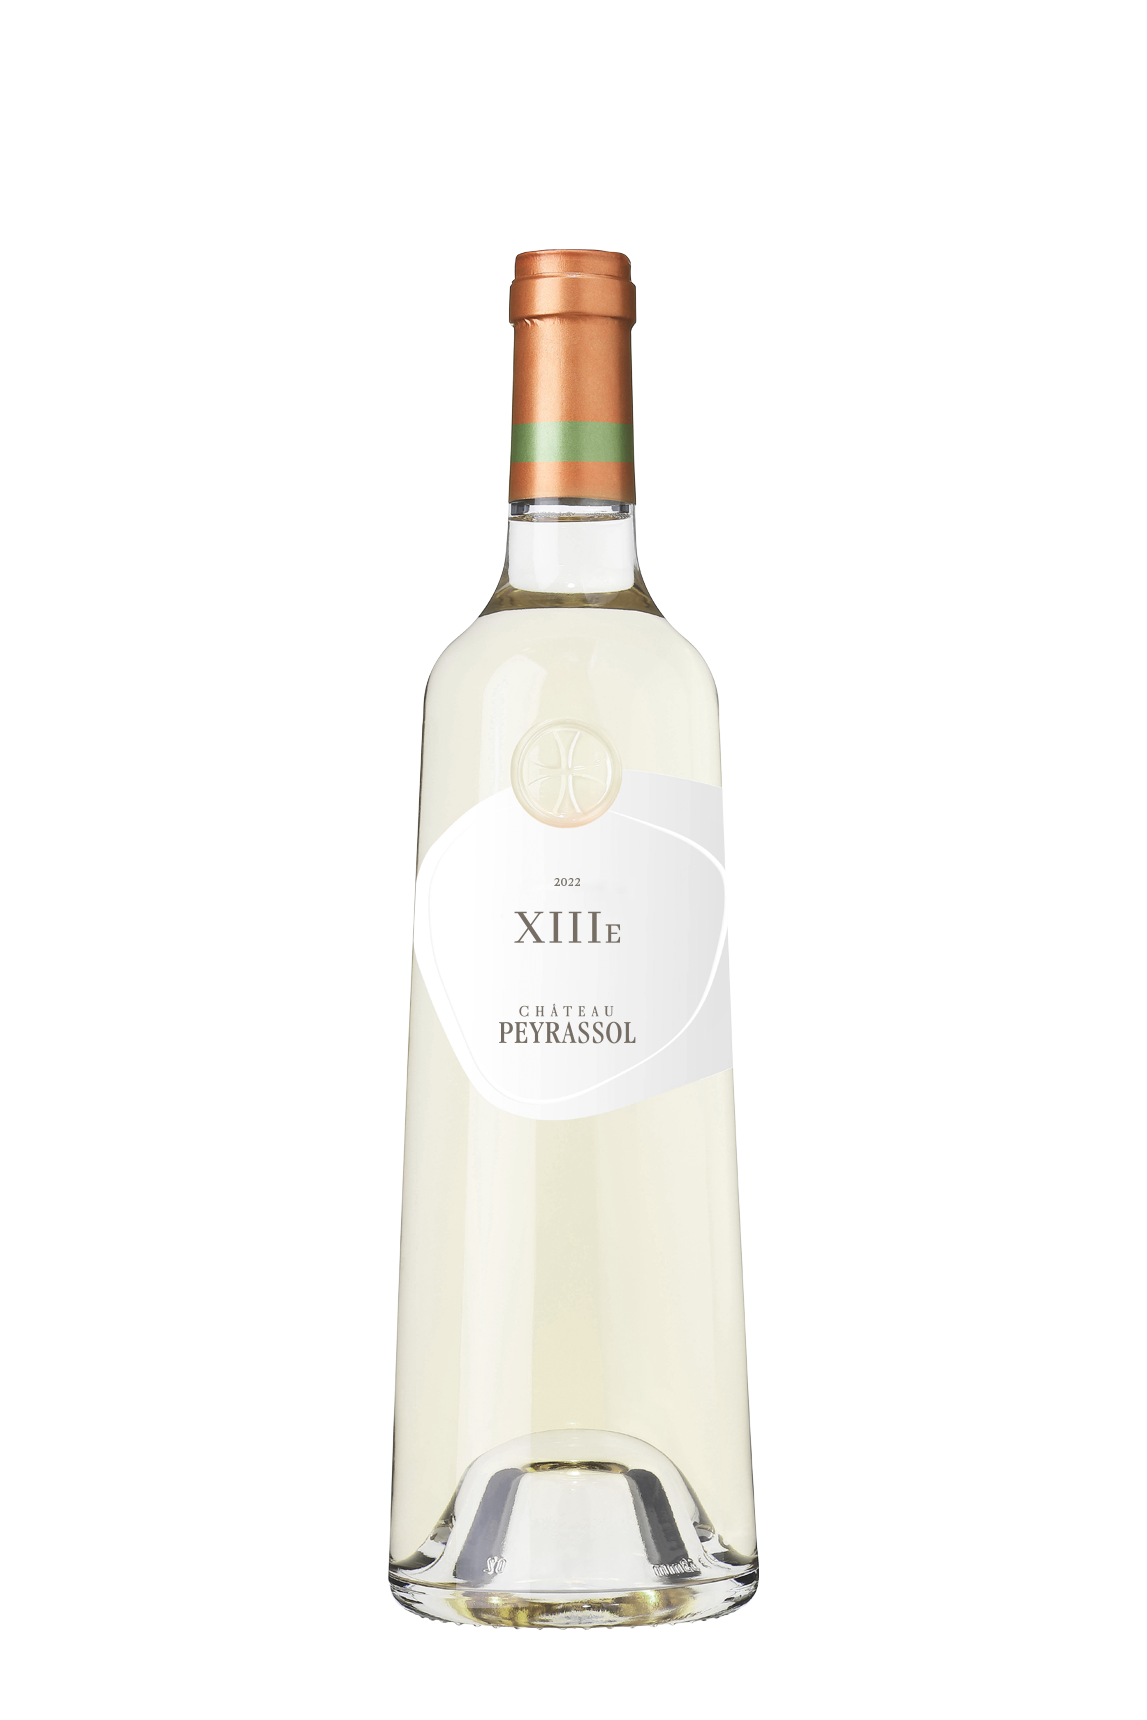 Château Peyrassol blanc 2021, vin blanc du domaine de la Commanderie de Peyrasol (vin de provence)